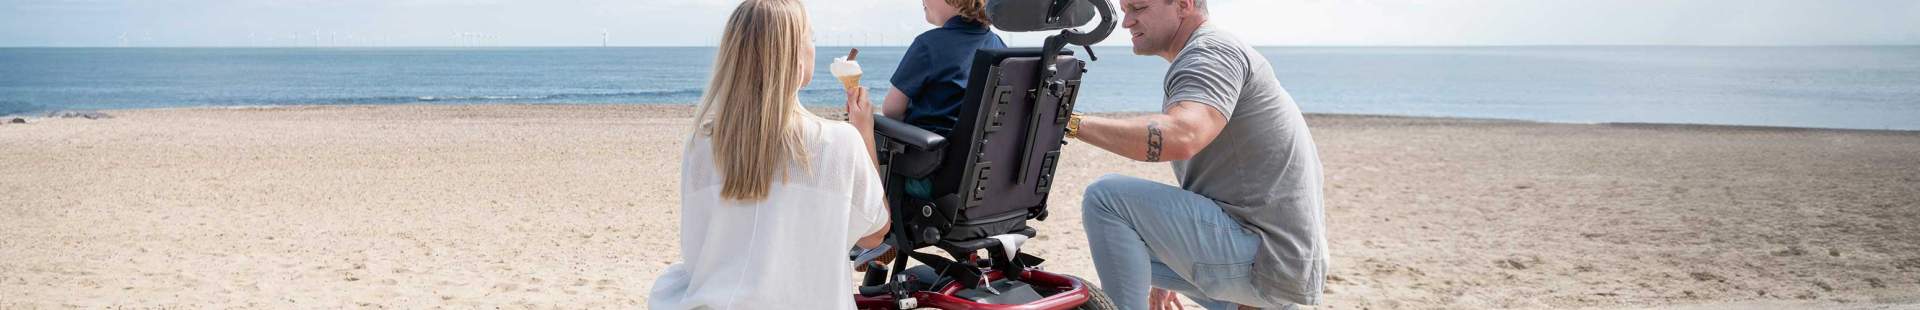 Eine Familie am Strand, das Kind sitzt im Rollstuhl.